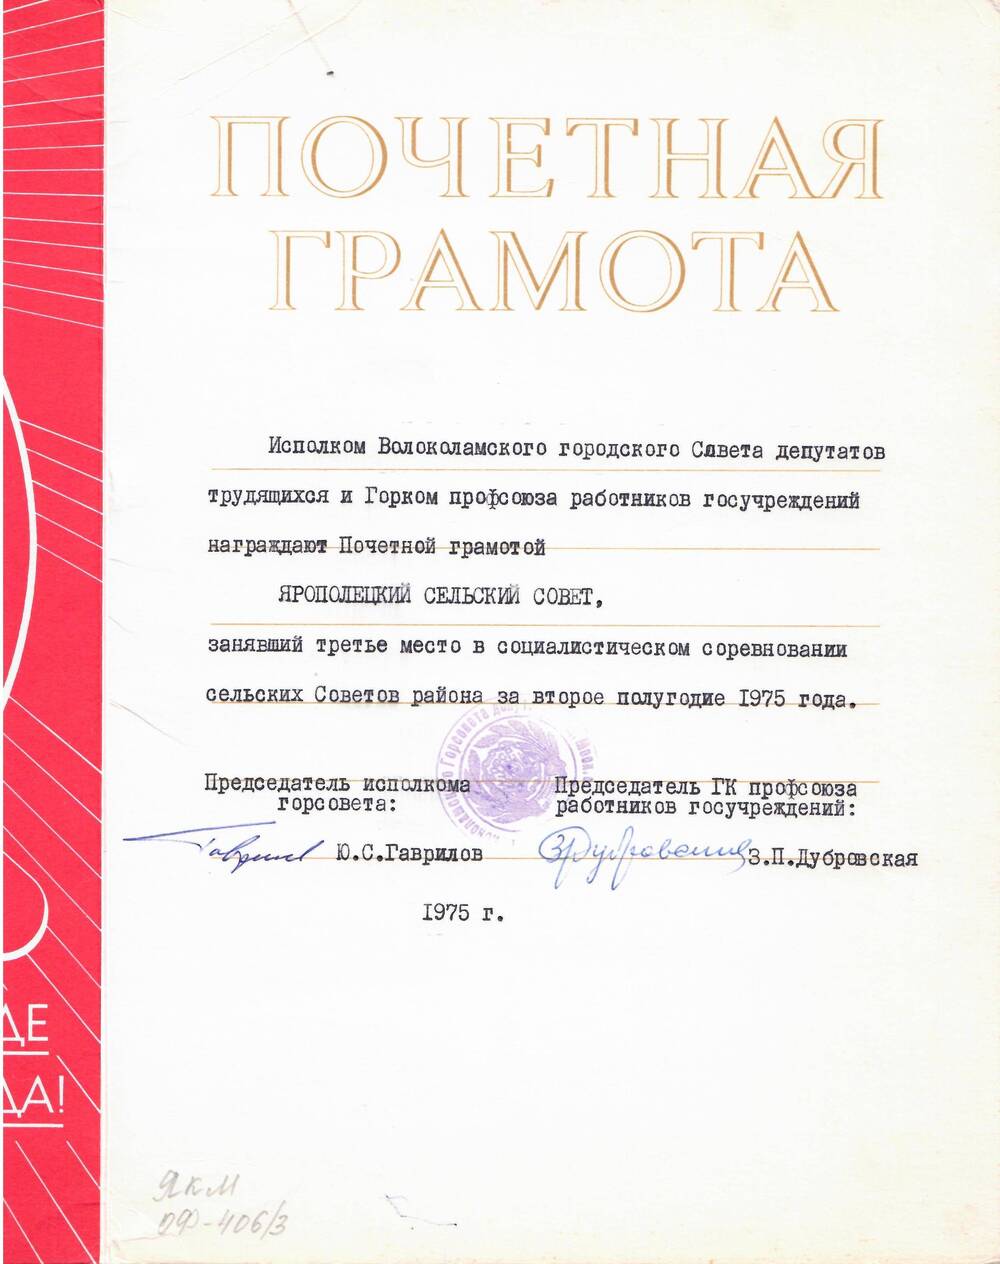 Почетная грамота, награжден Ярополецкий с/совет, занявший III место в соц. соревнованиях за II полугодие 1975 г.